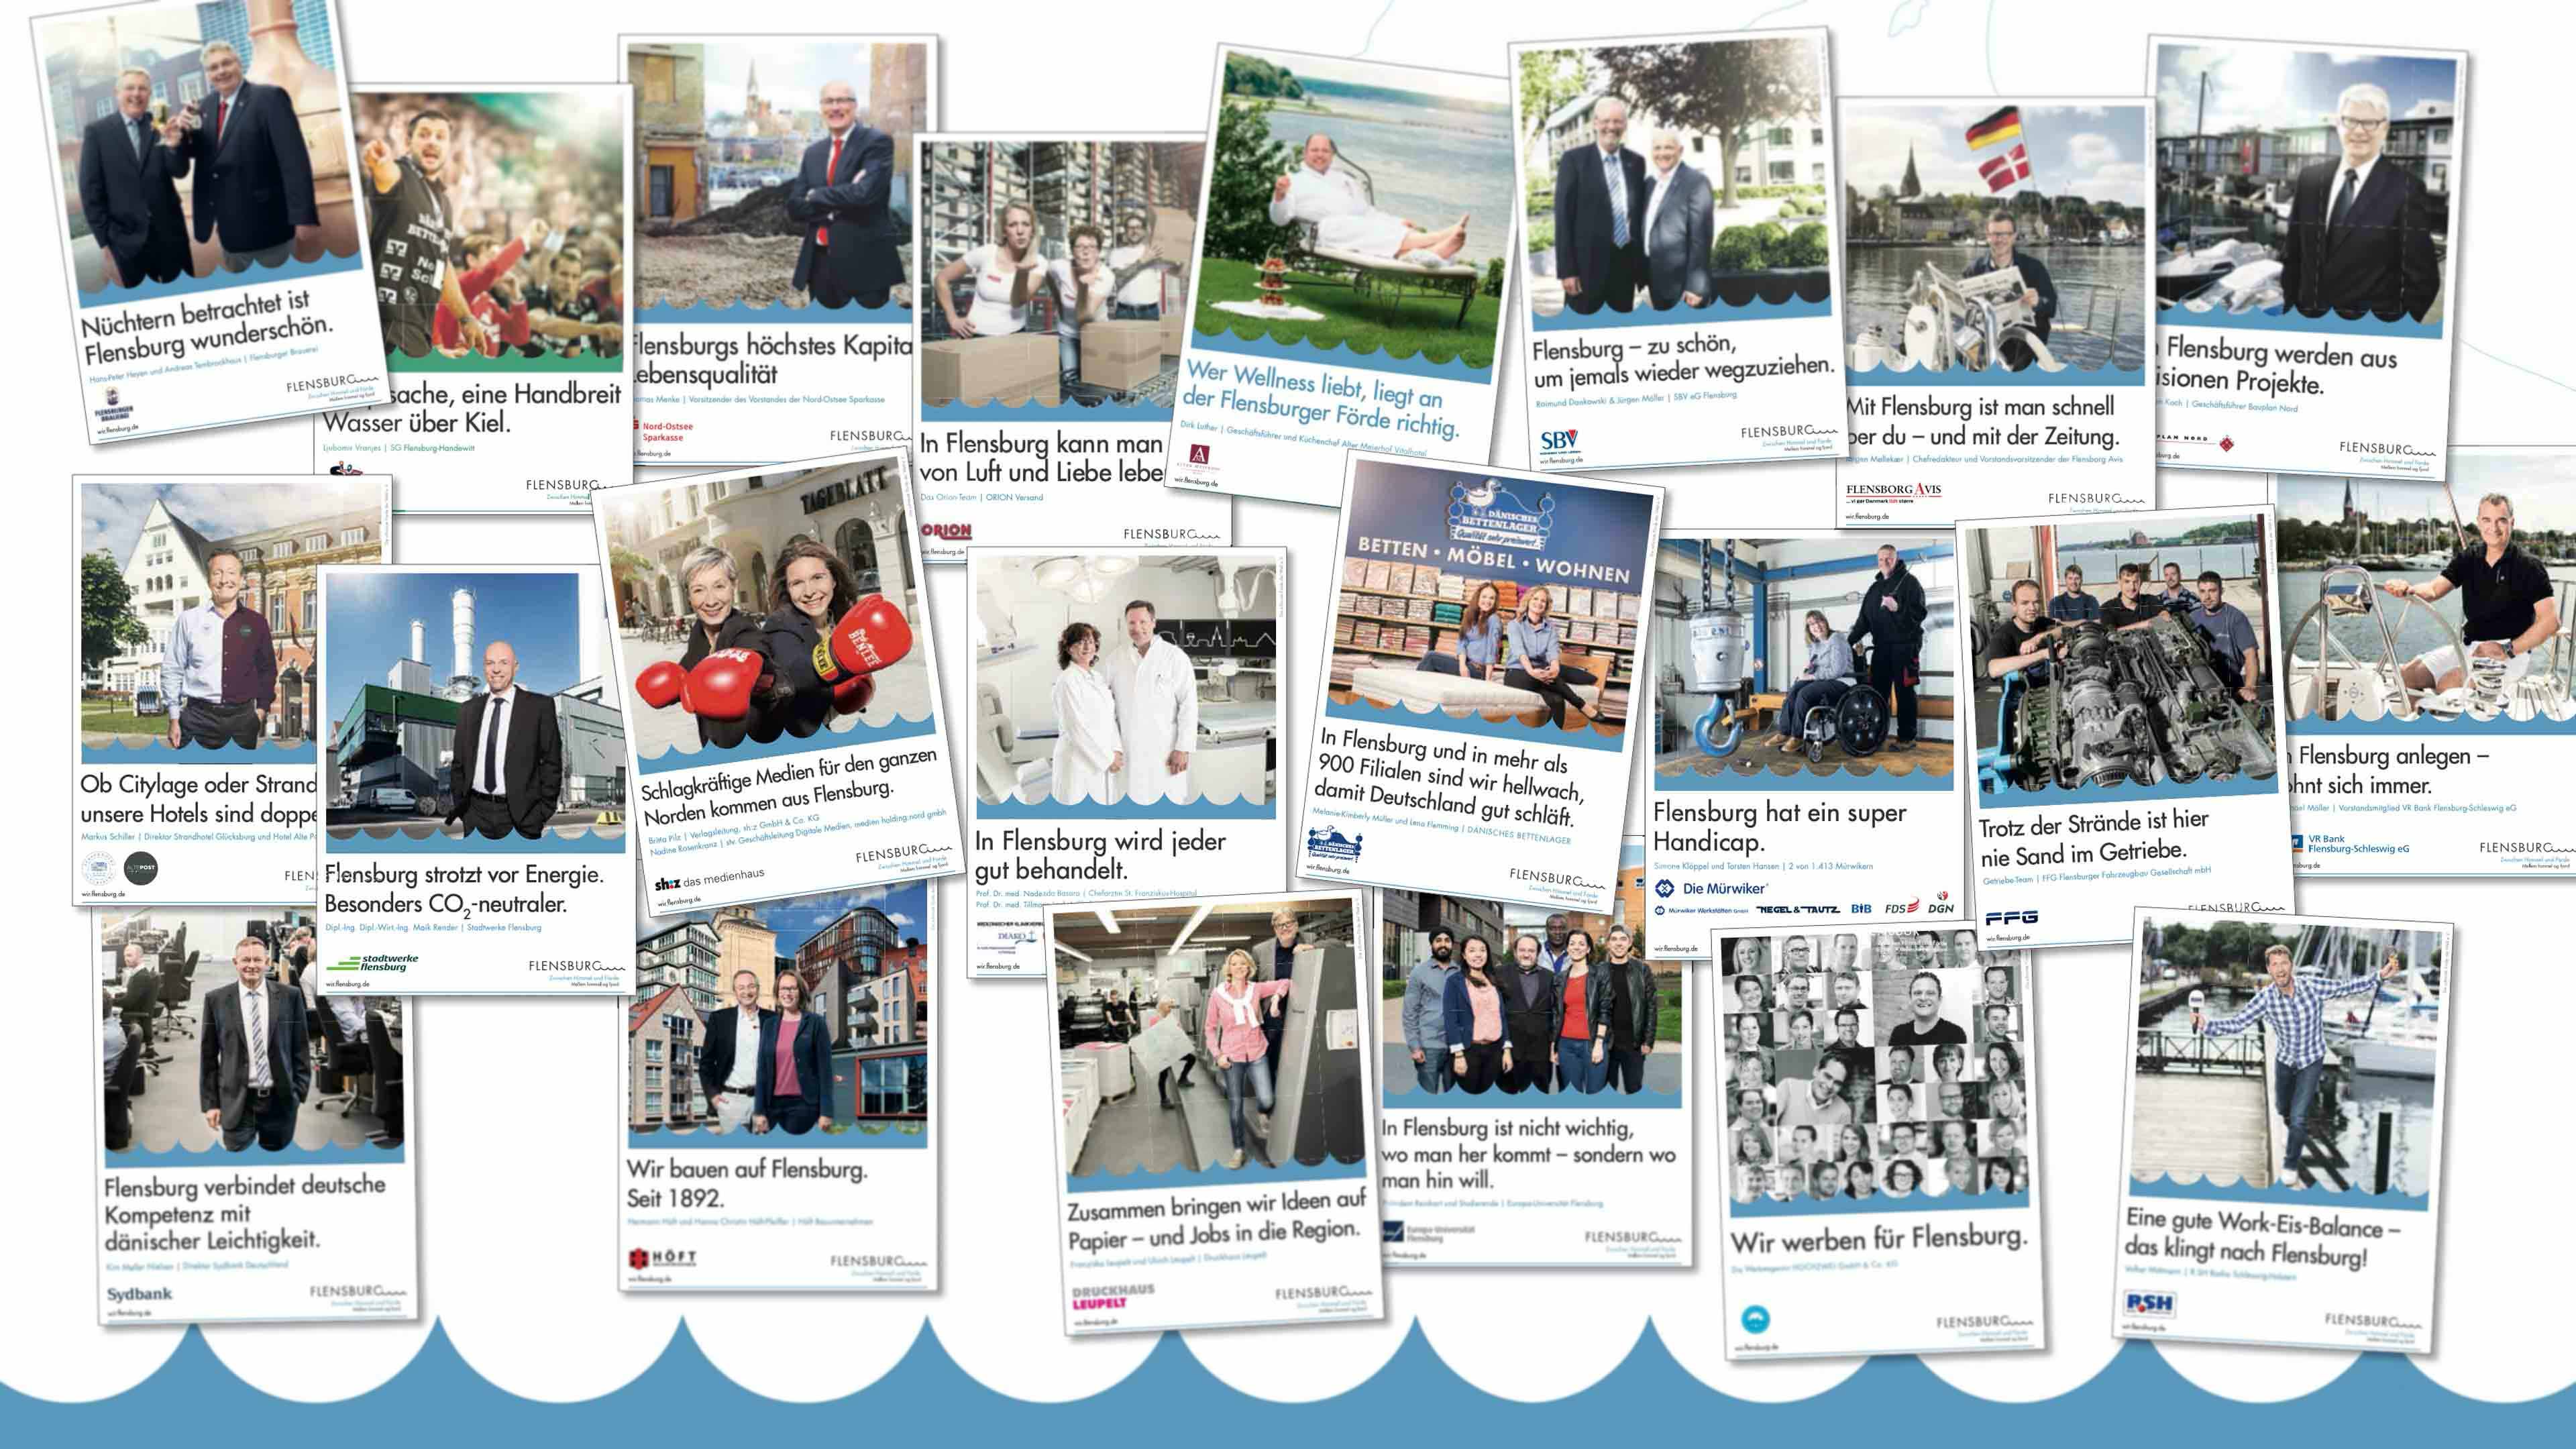 Collage von 22 Flensburg-Kampagnenbildern mit Personenfotos, Firmen- und Flensburglogo und Texten